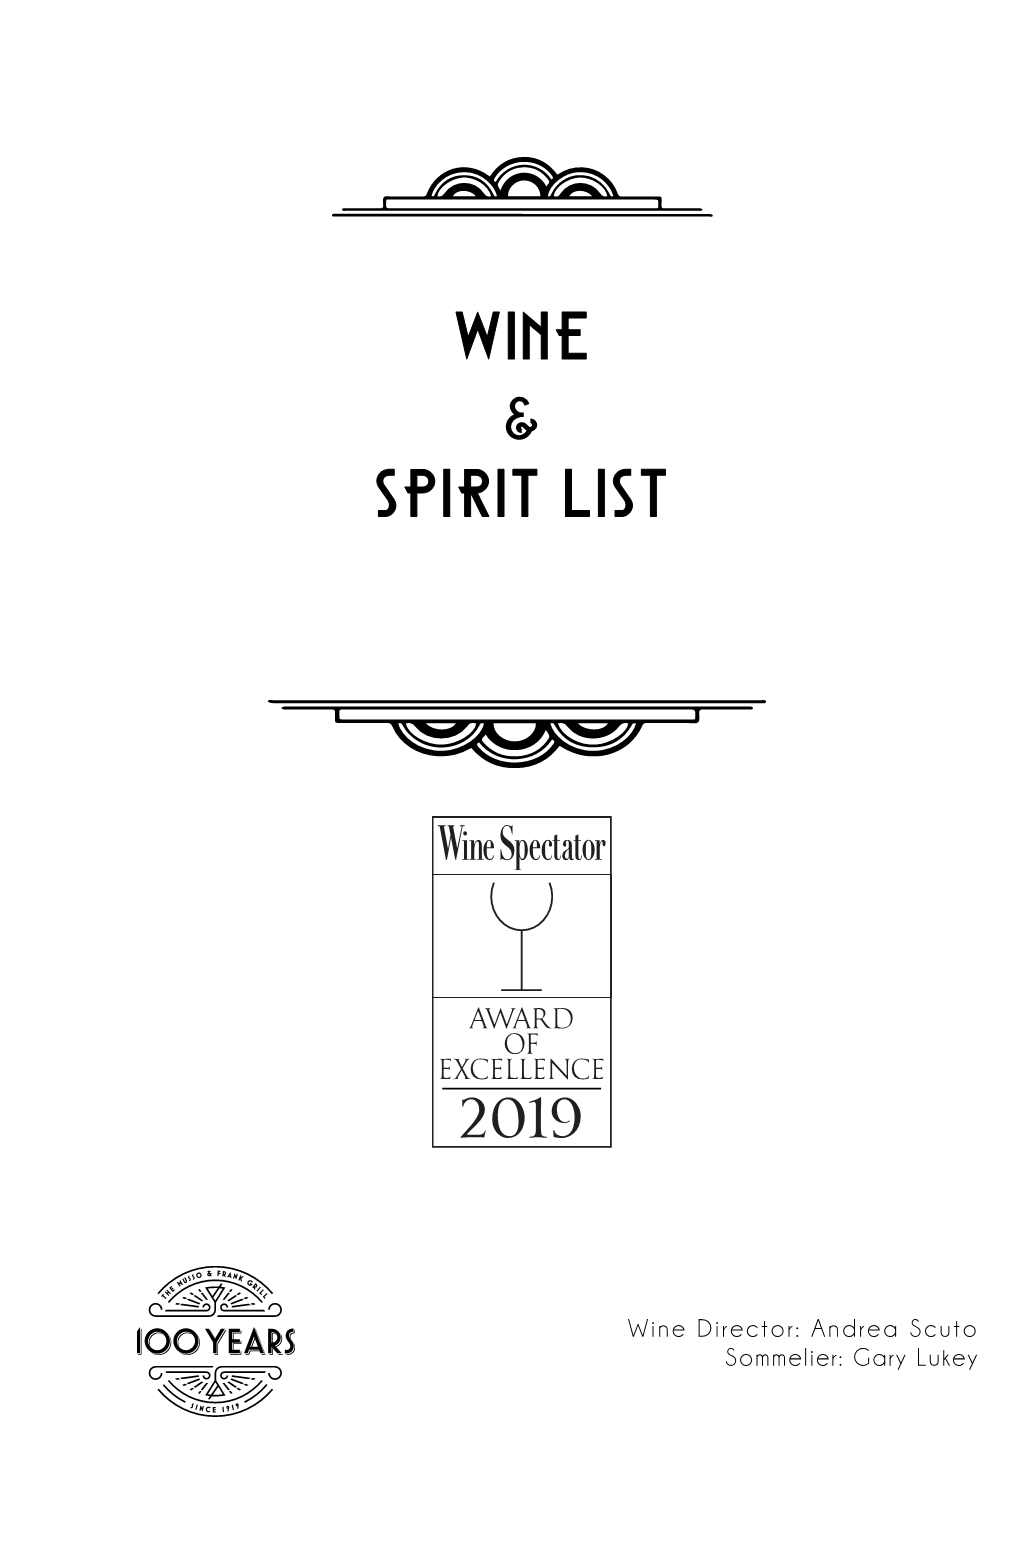 Wine and Spirits